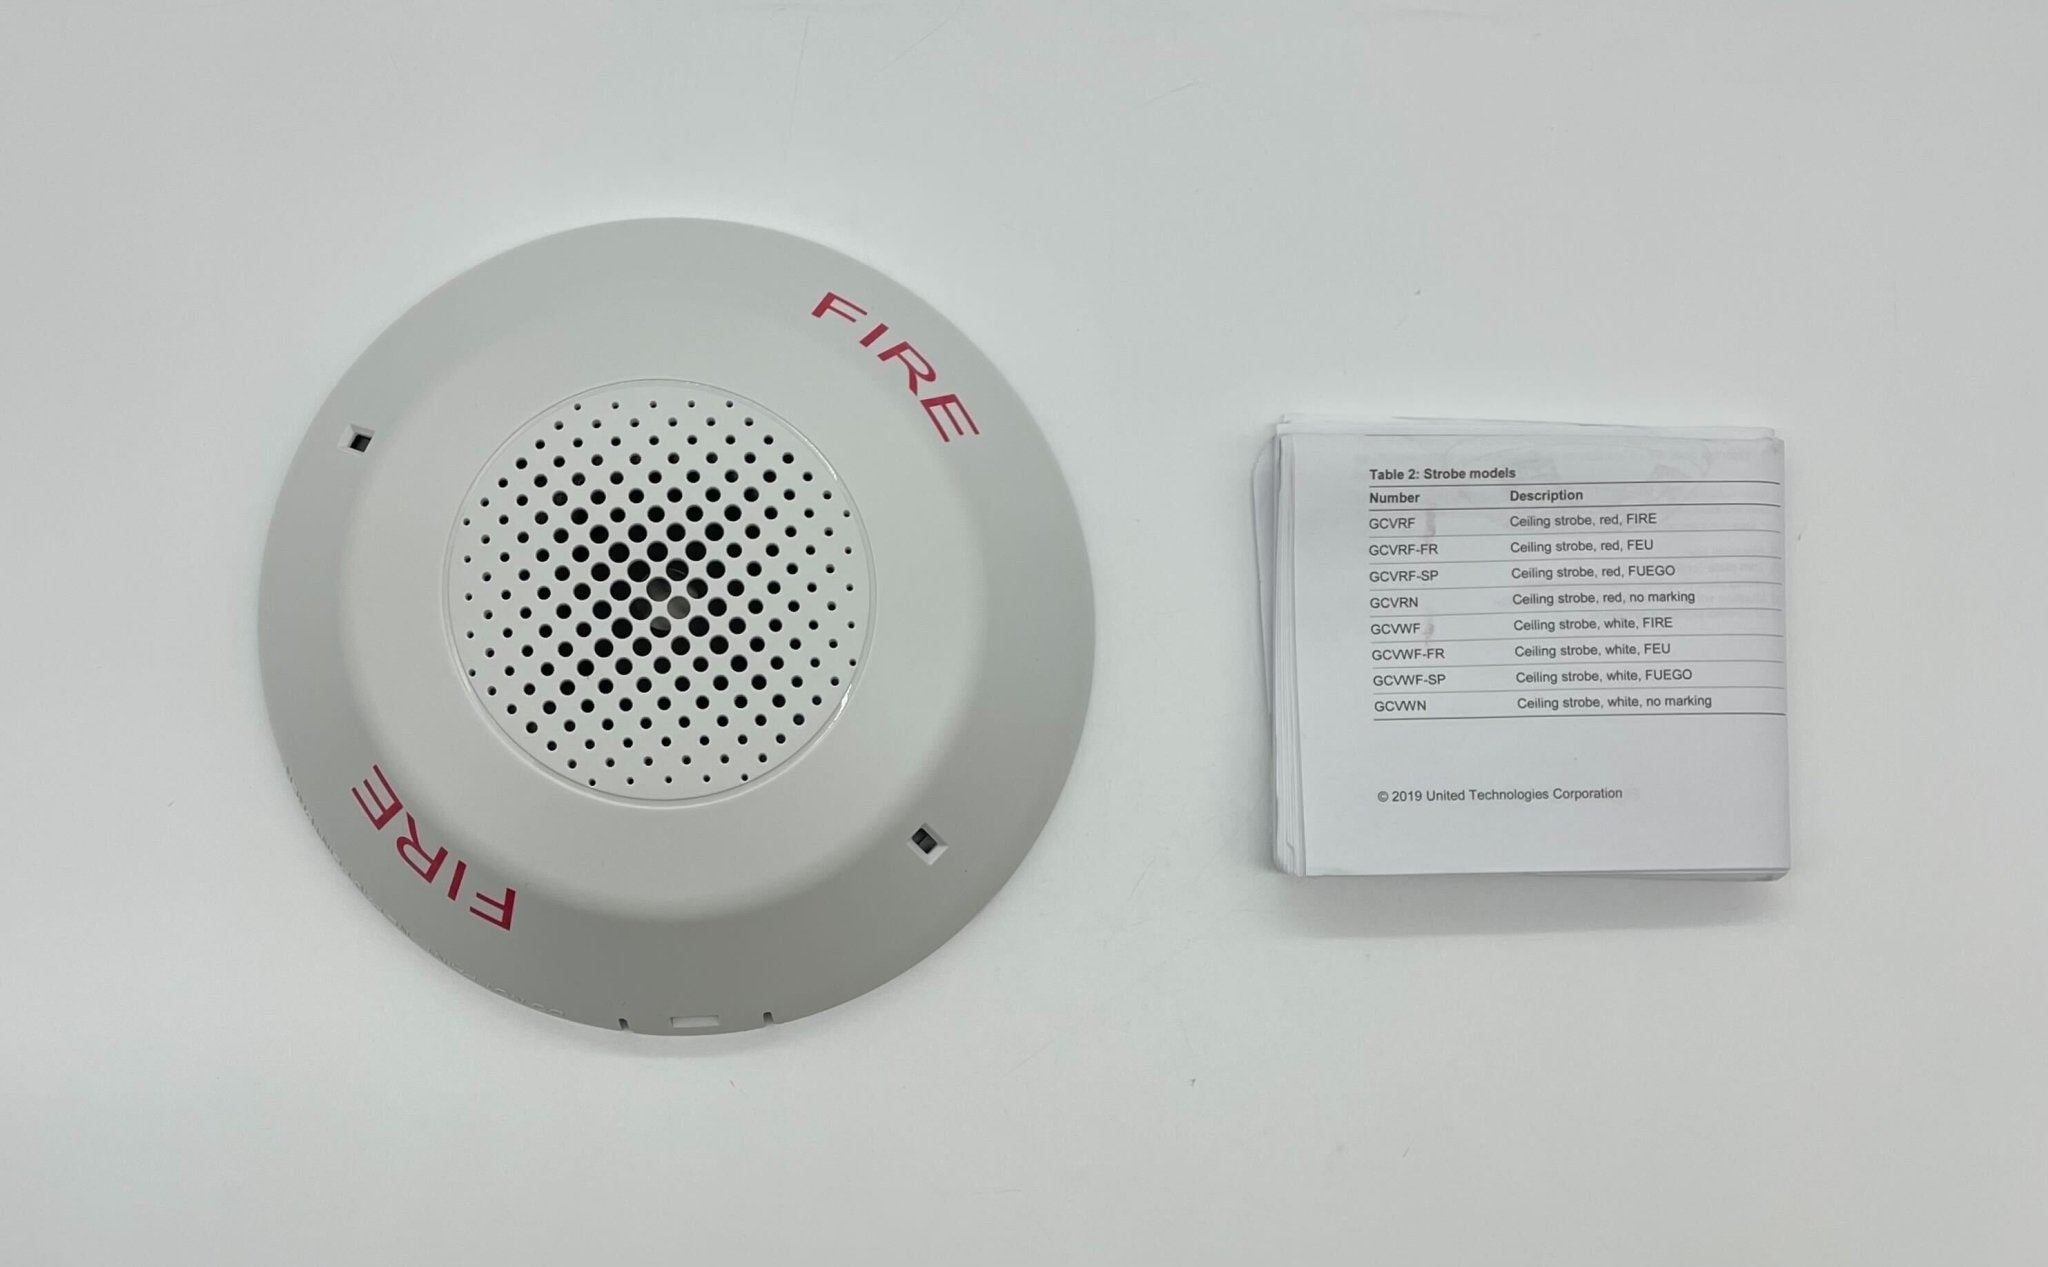 Edwards GCAWF - The Fire Alarm Supplier